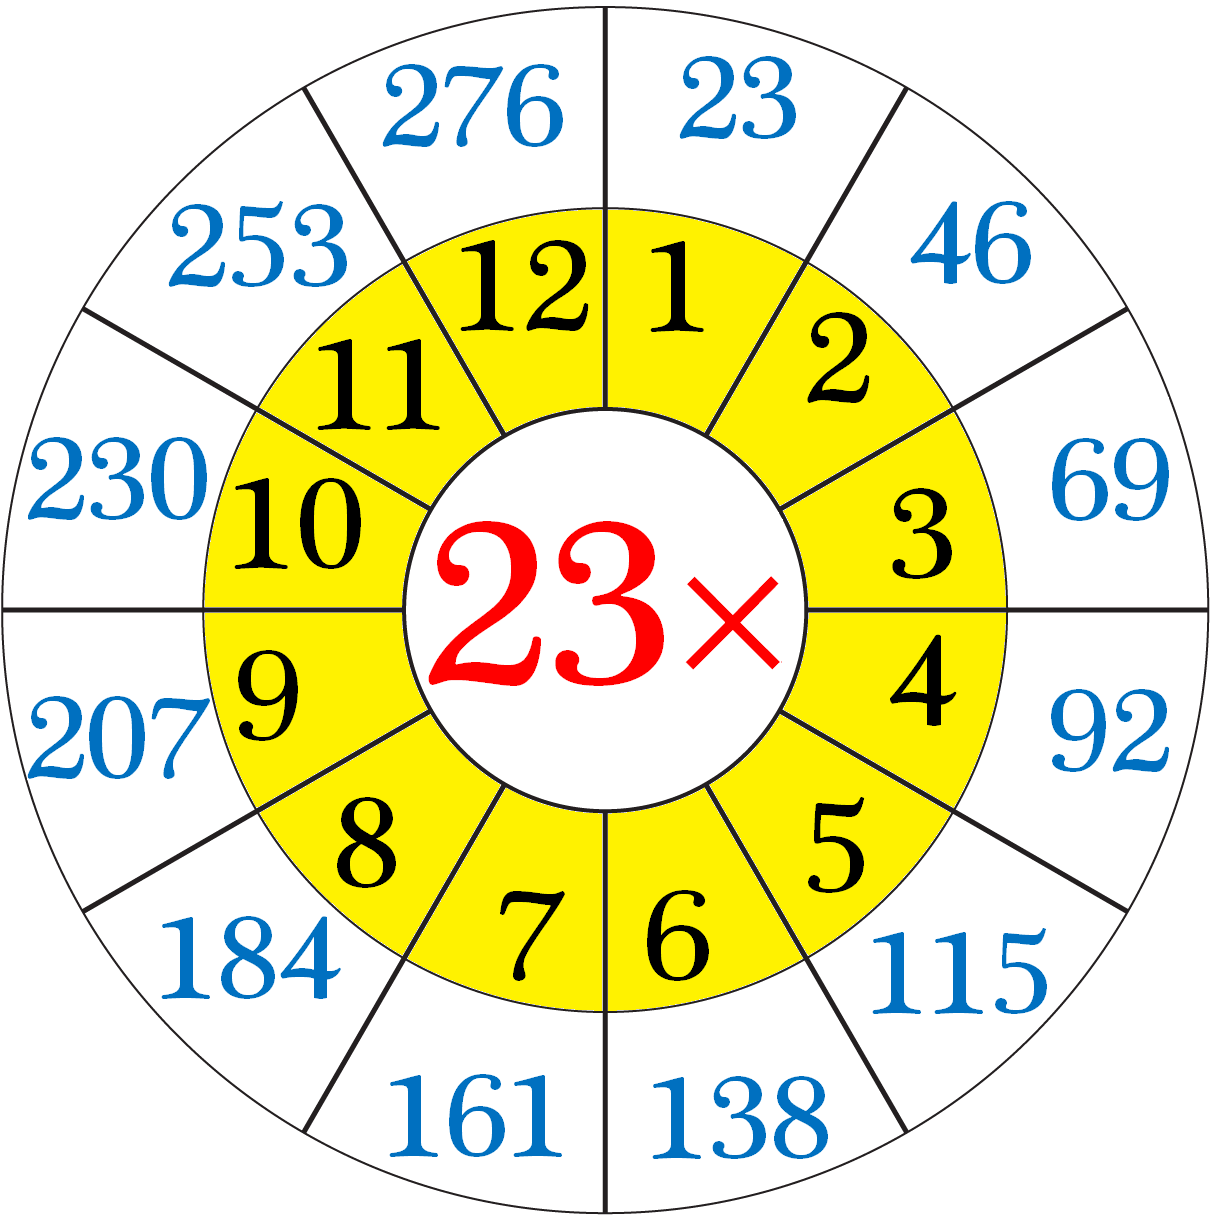 Multiplication Table of Twenty-Three